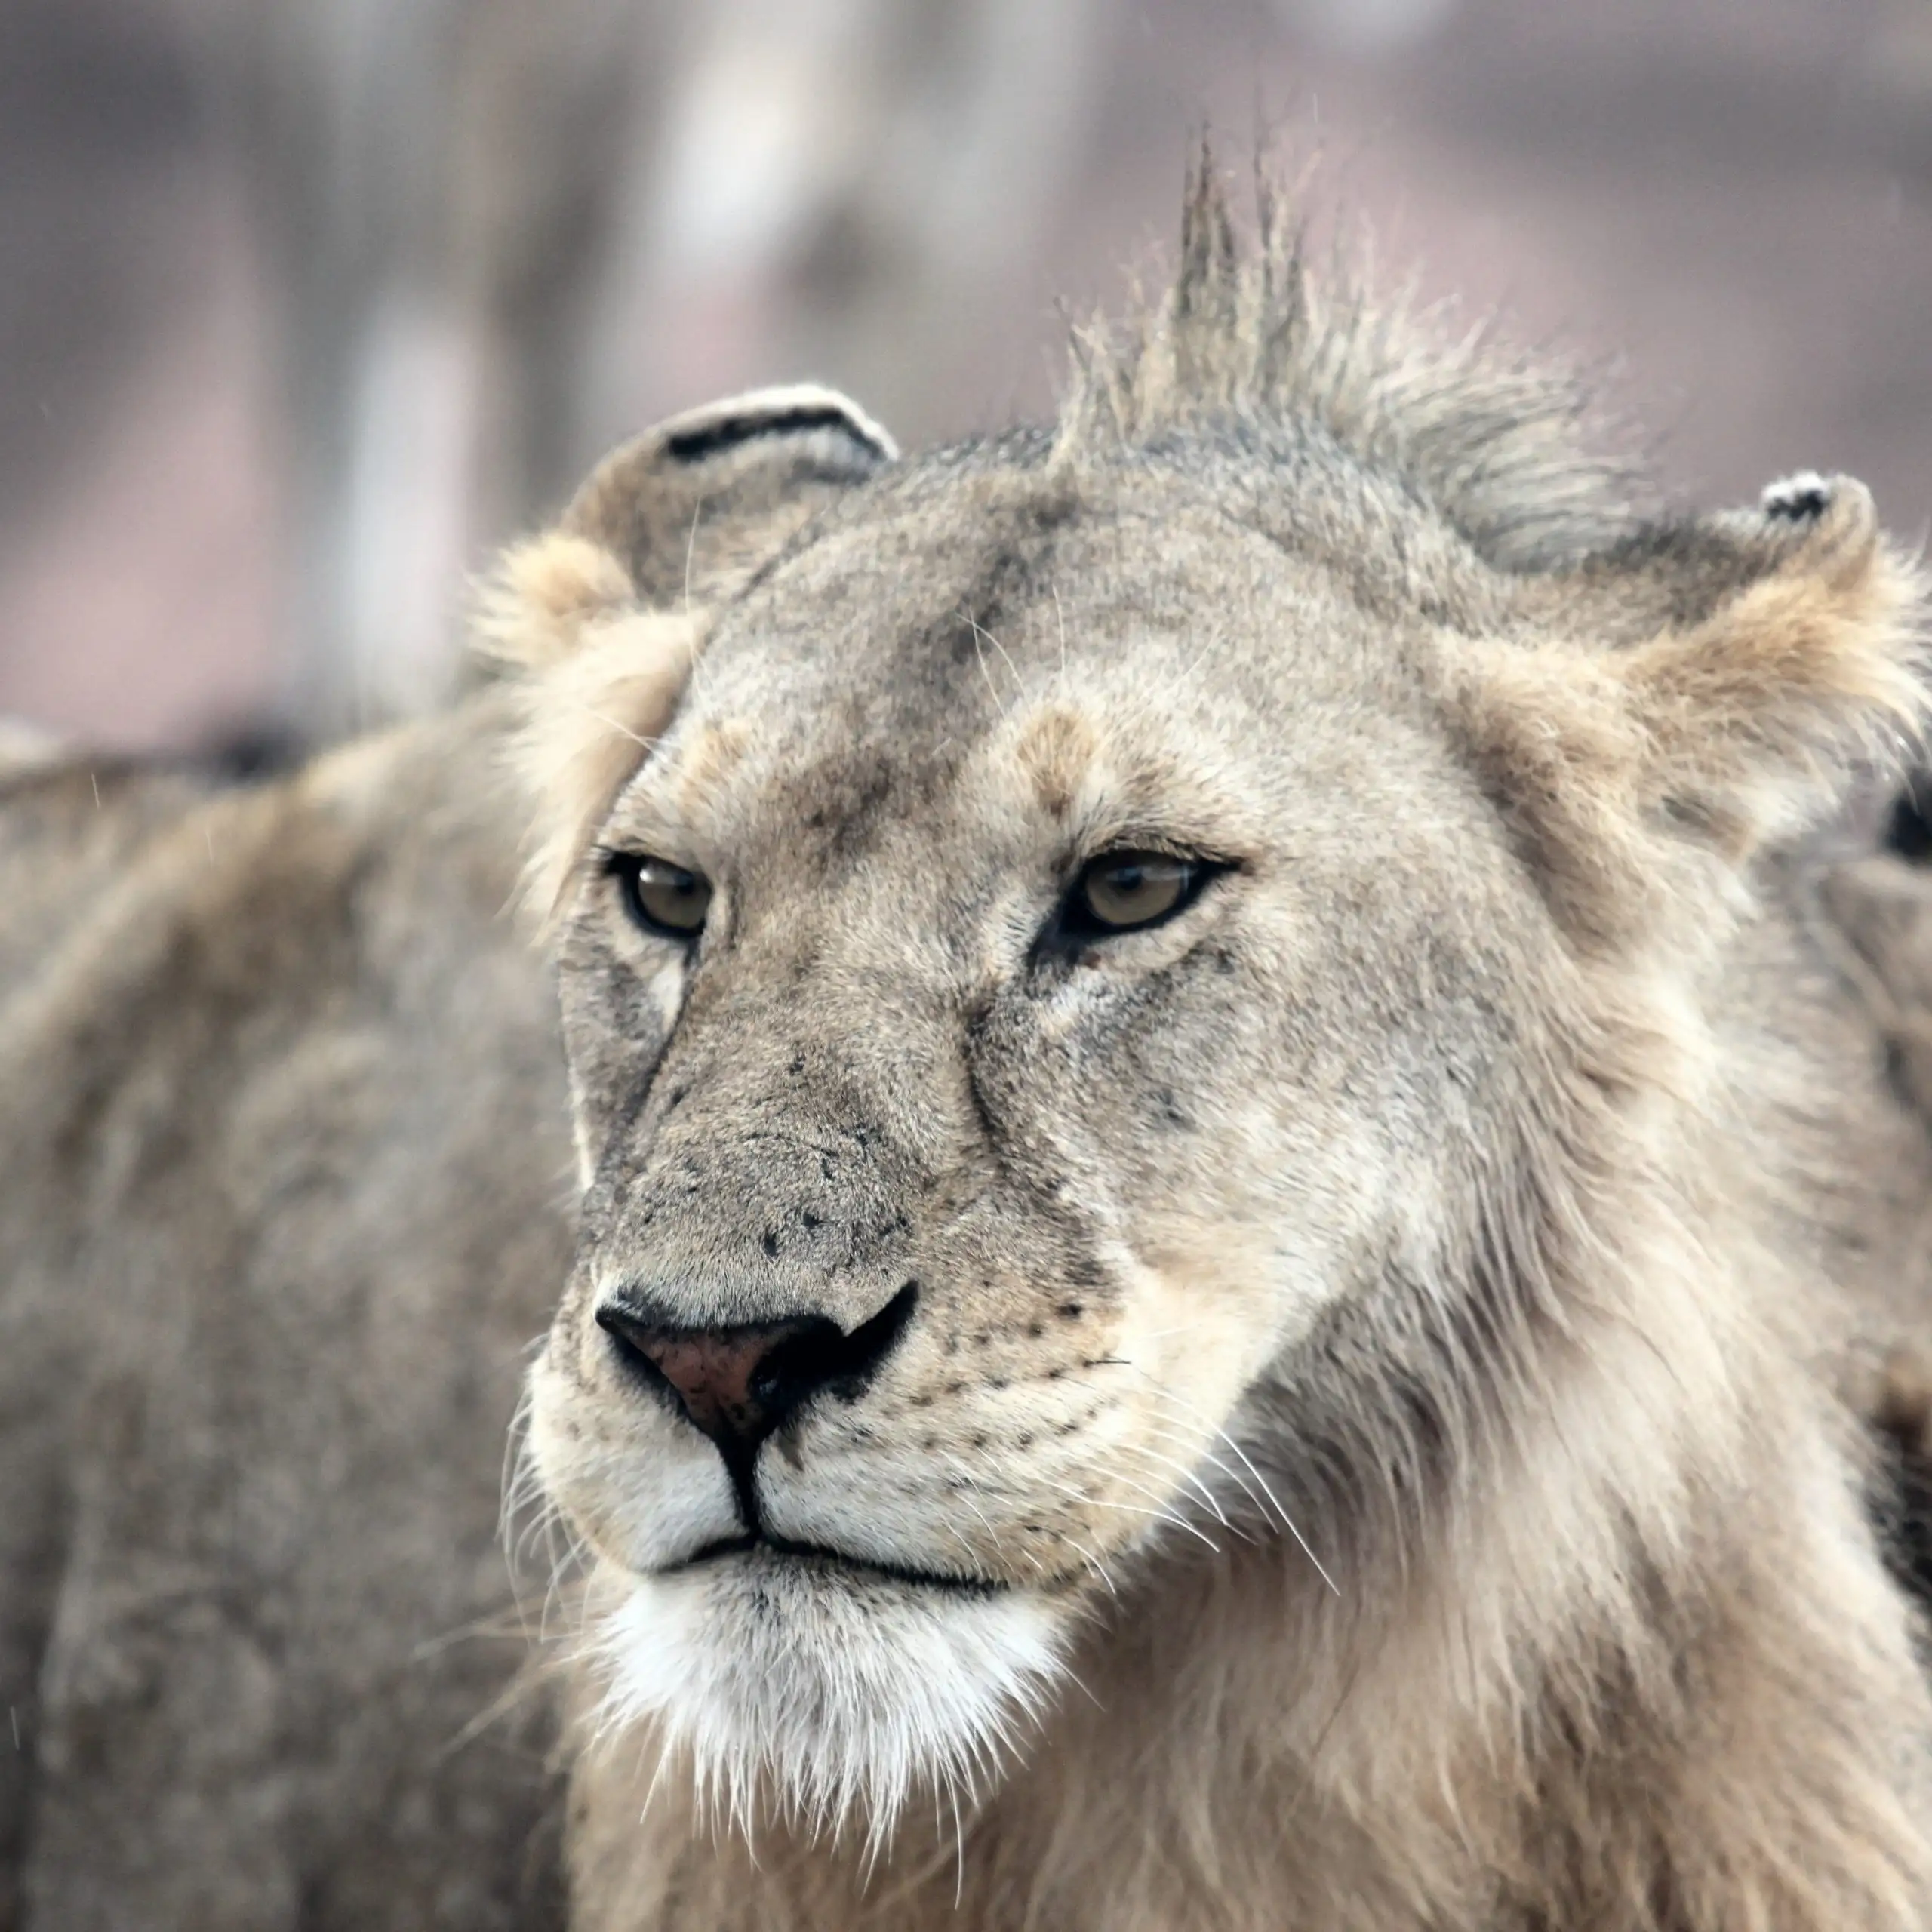 Wildlife photographic safari tour in Tanzania 10 days